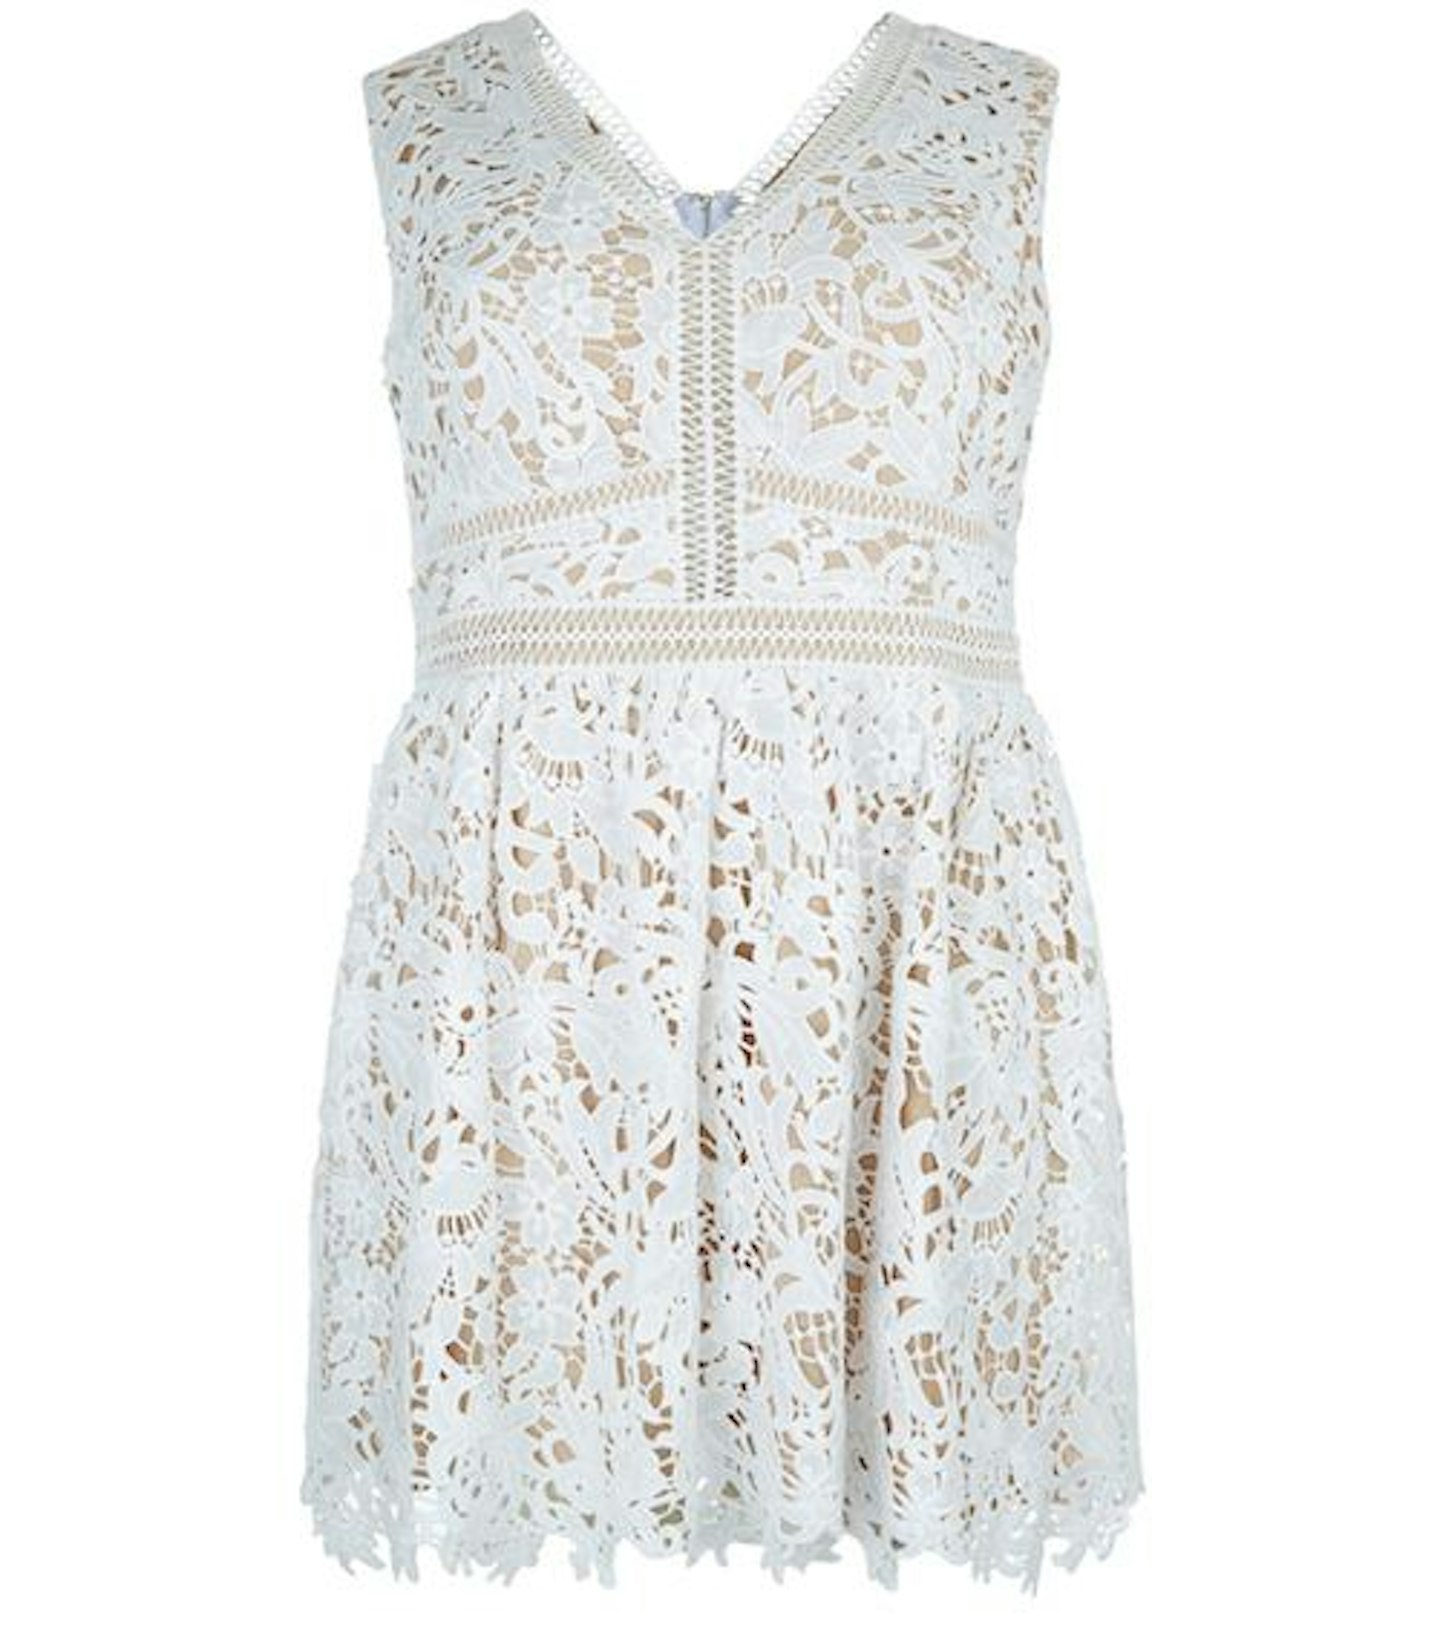 Lace dress £39.99